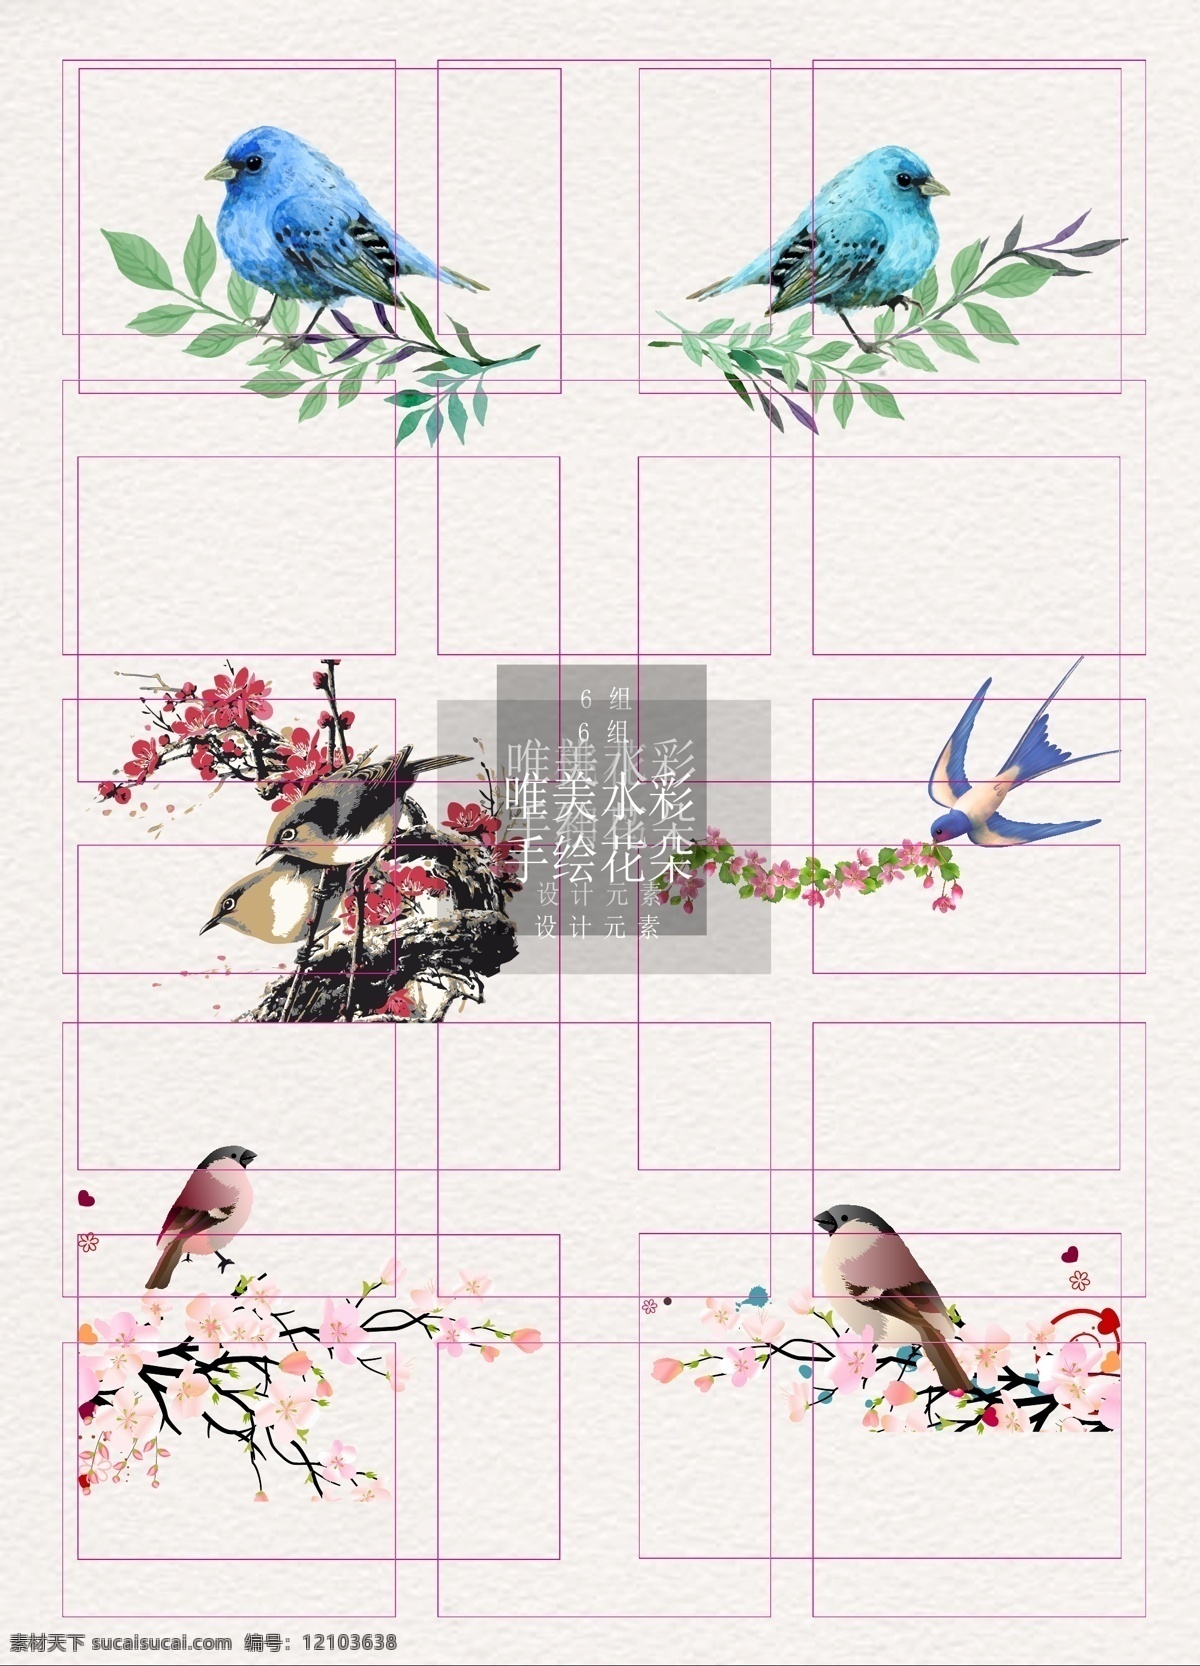 桃花 鸟 设计素材 矢量 元素 树枝 叶子 燕子 惊蛰 节气 桃花枝 桃花和燕子 桃花和鸟